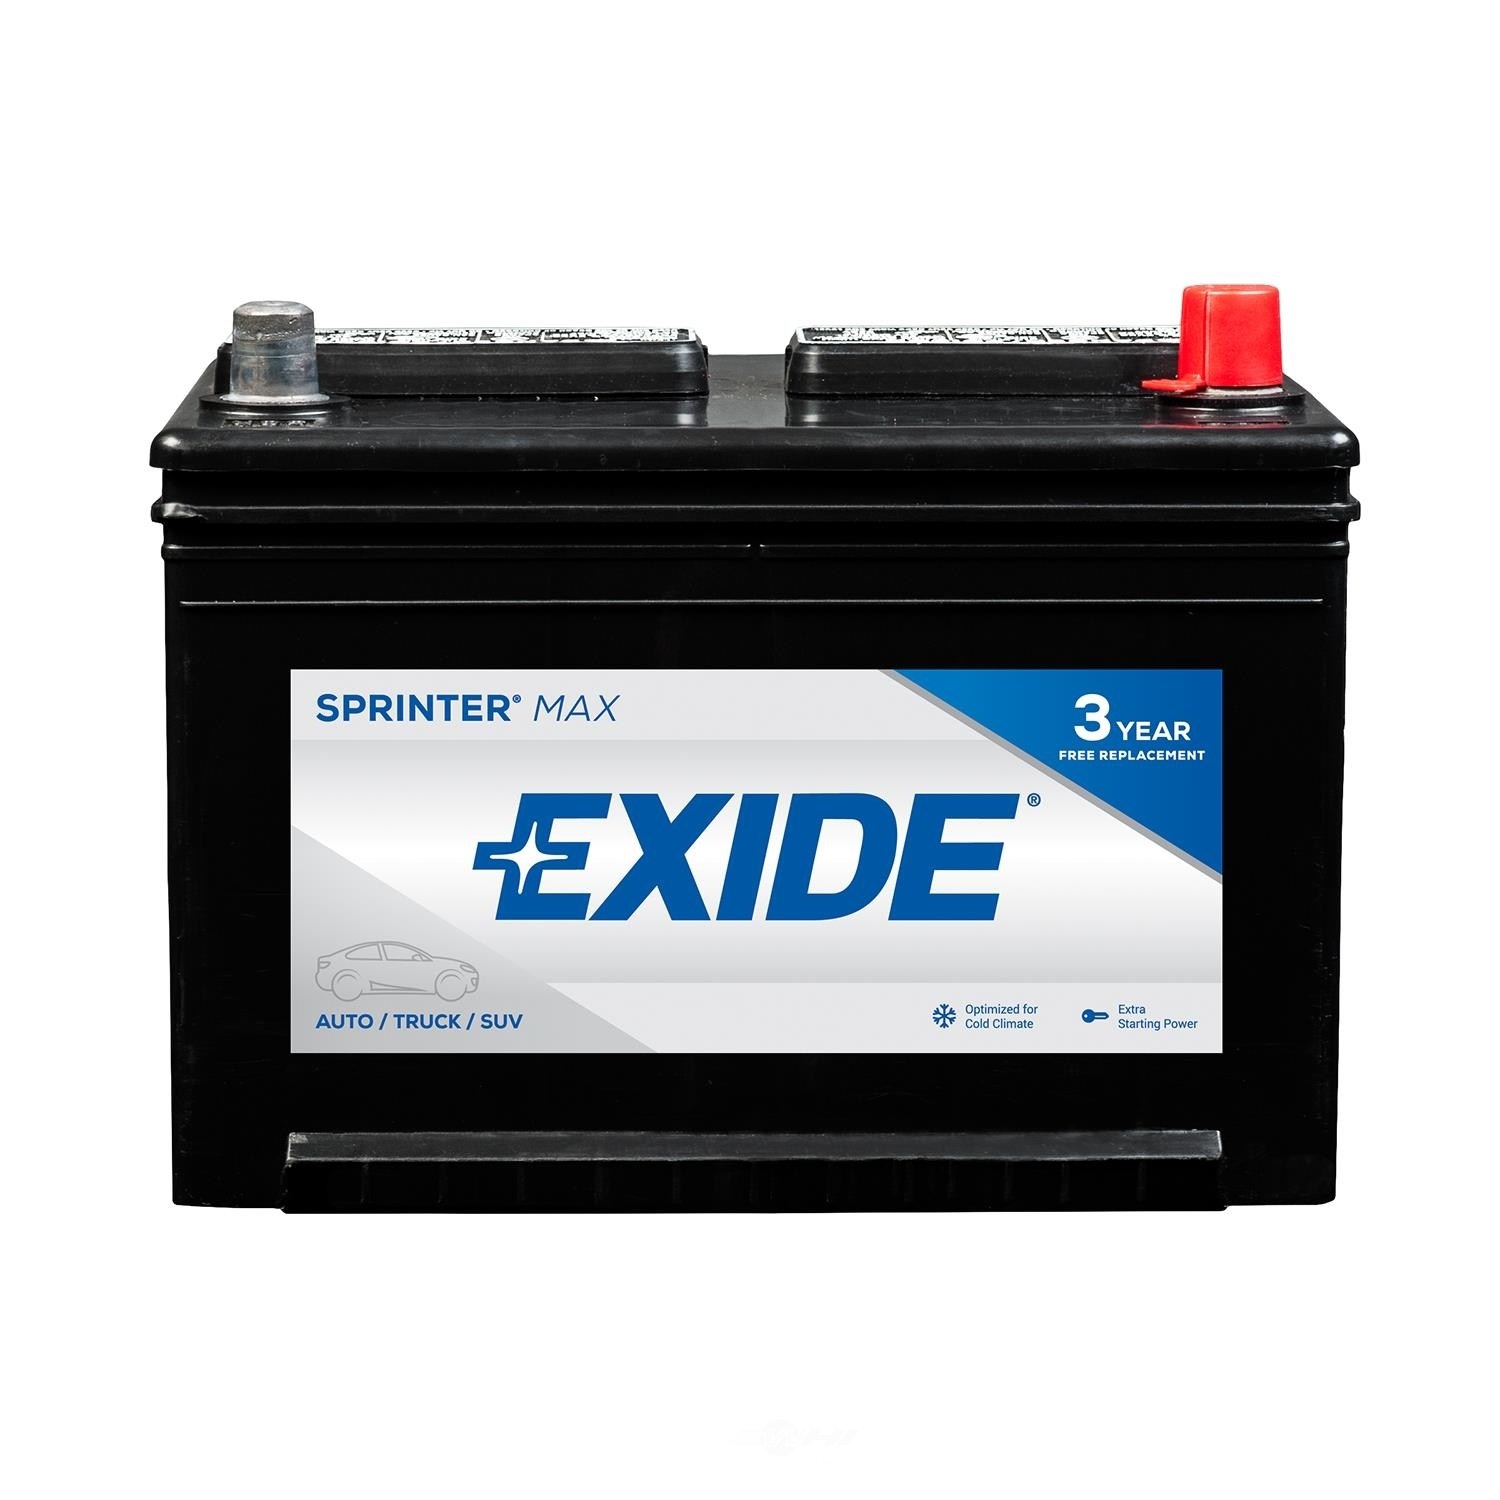 EXIDE BATTERIES - SPRINTER MAX - CCA: 600 - EX1 SX58R